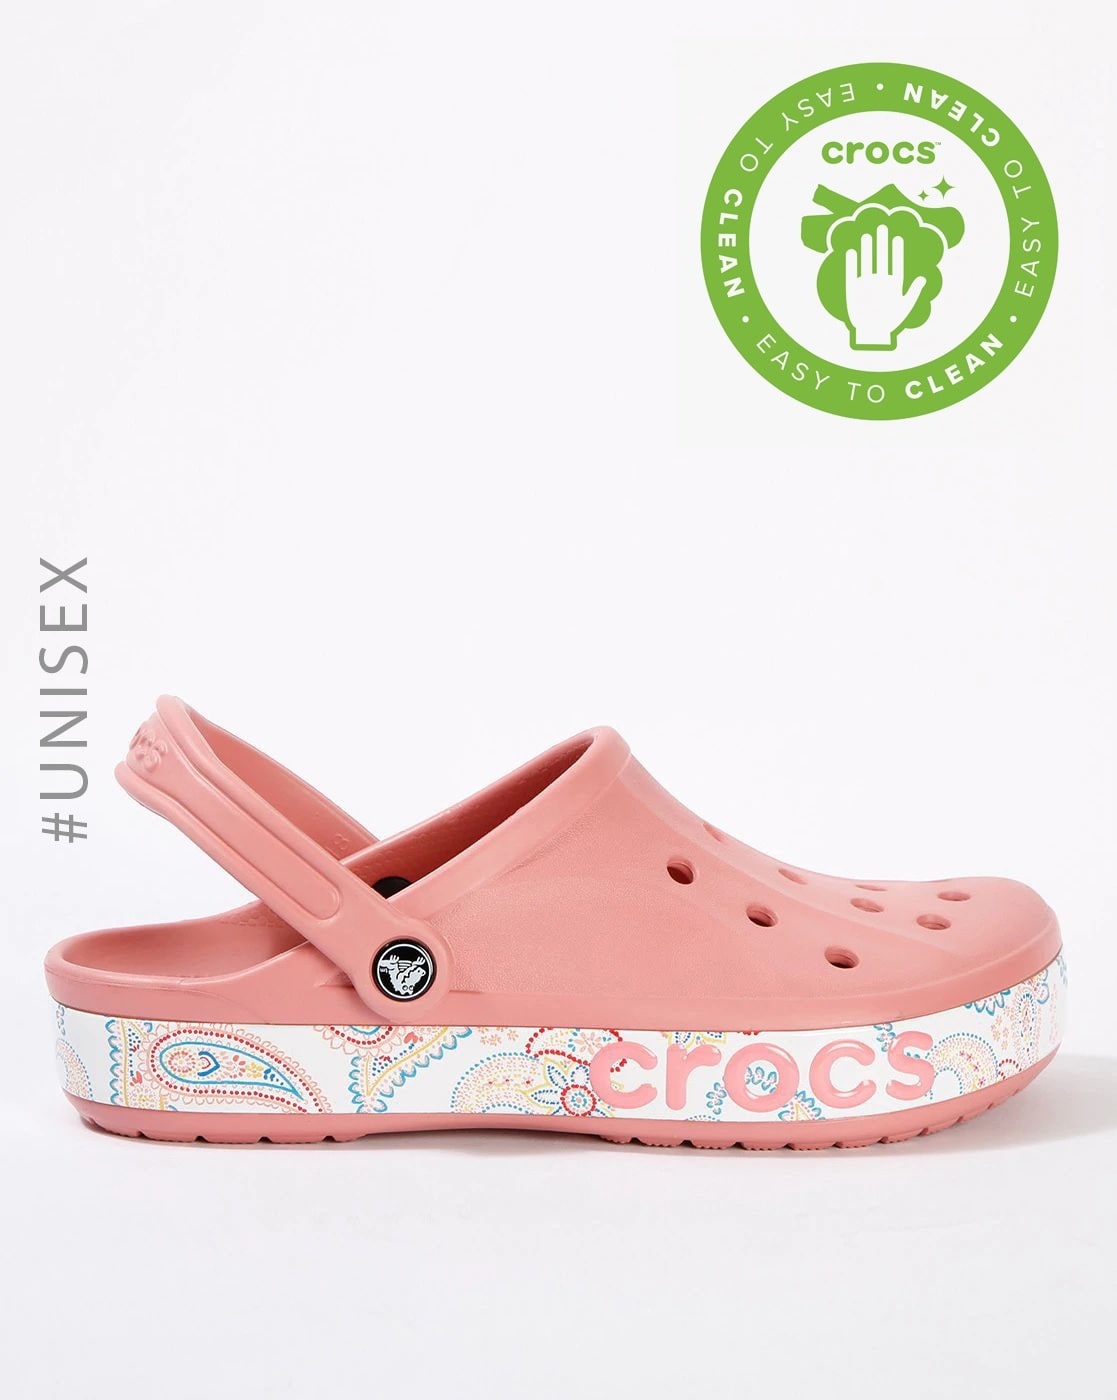 buy womens crocs online india